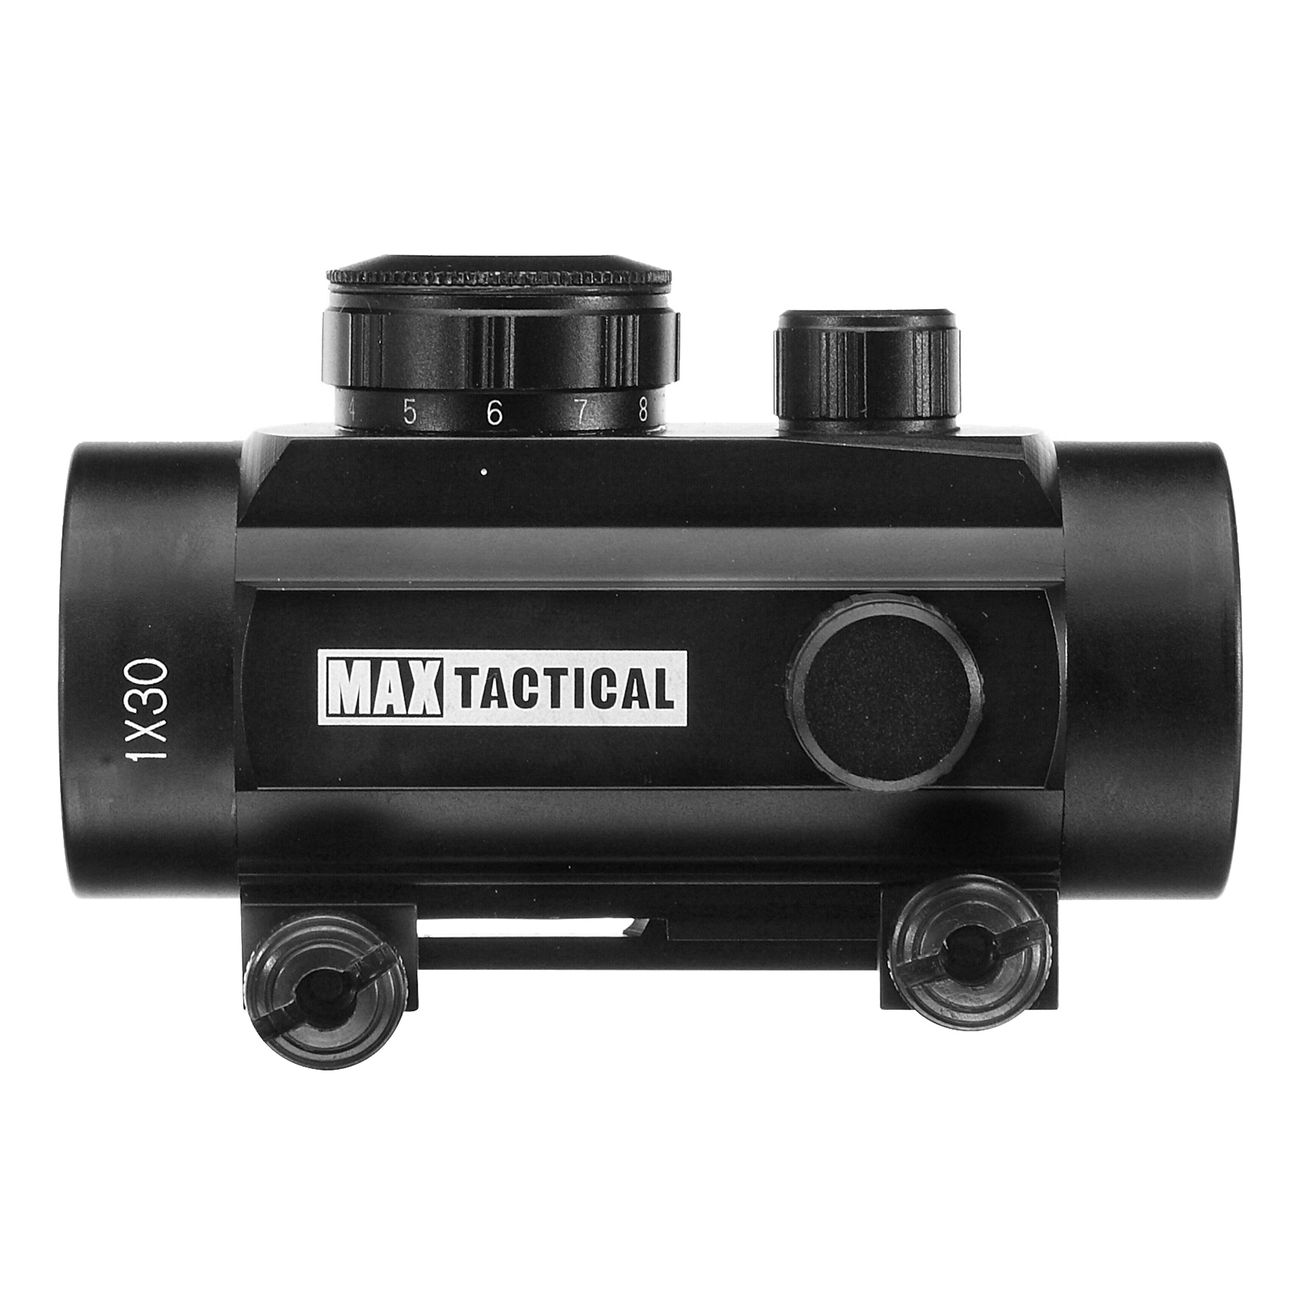 Max Tactical Leuchtpunktzielgerät 1x30 Red Dot für 22 mm Schiene Bild 1